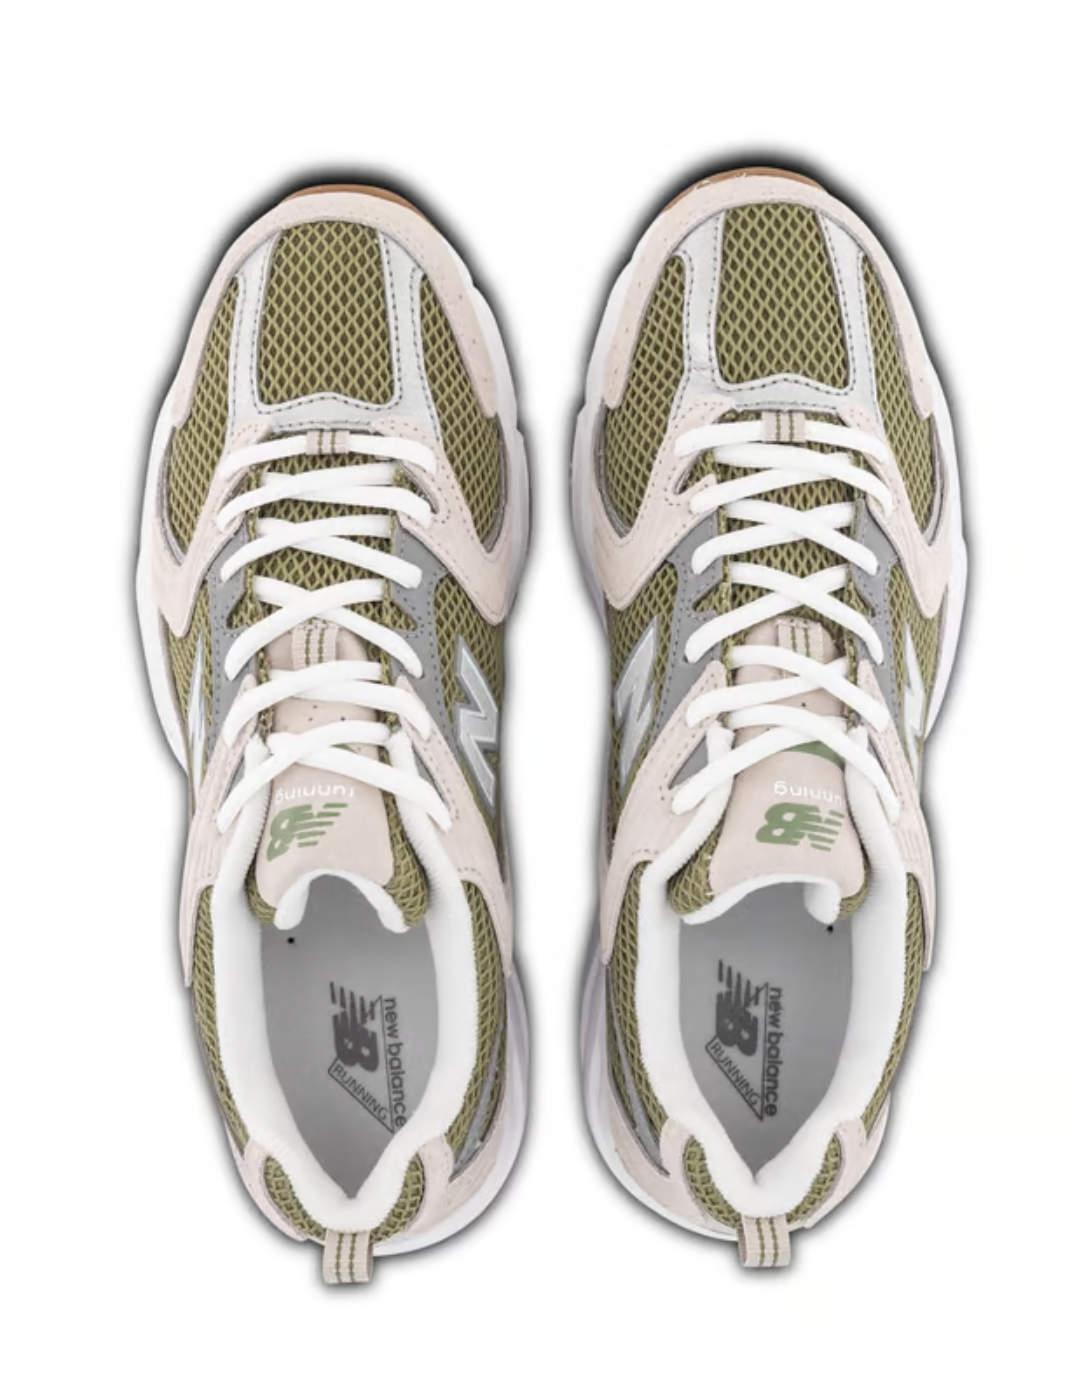 Zapatillas New Balance 530  blancas y verdes para hombre